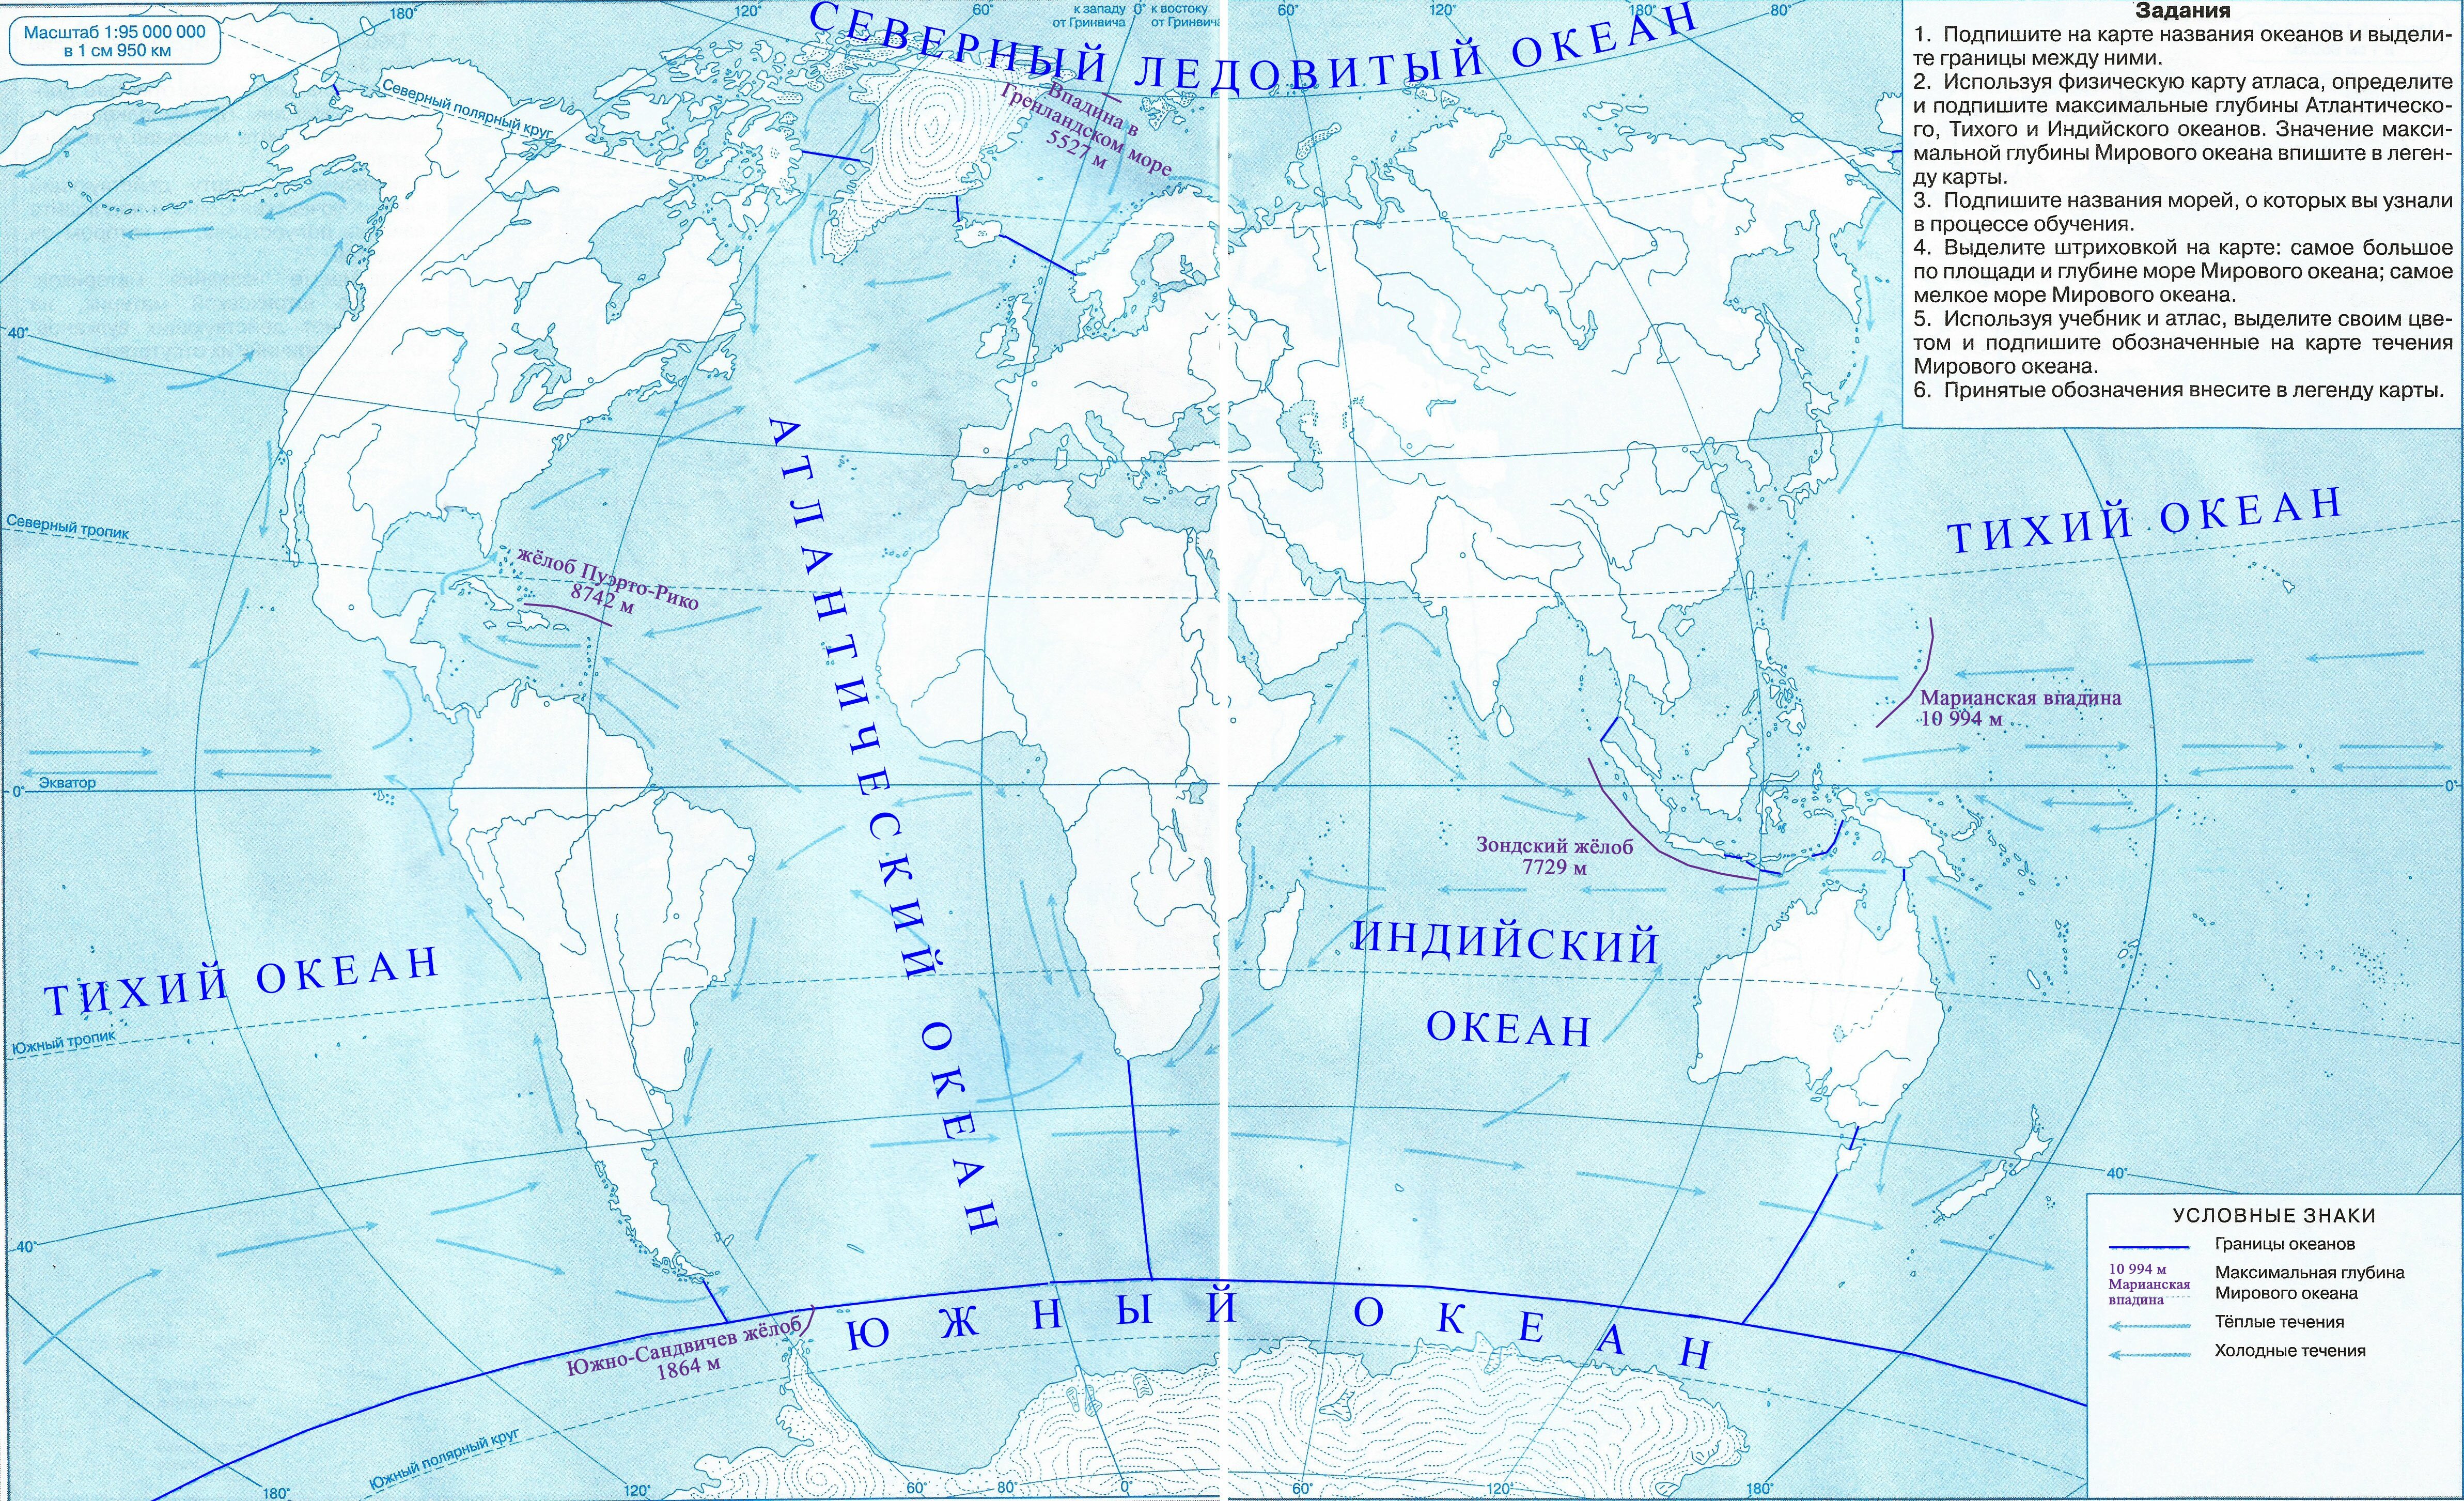 Максимальная глубина мирового океана на контурной карте